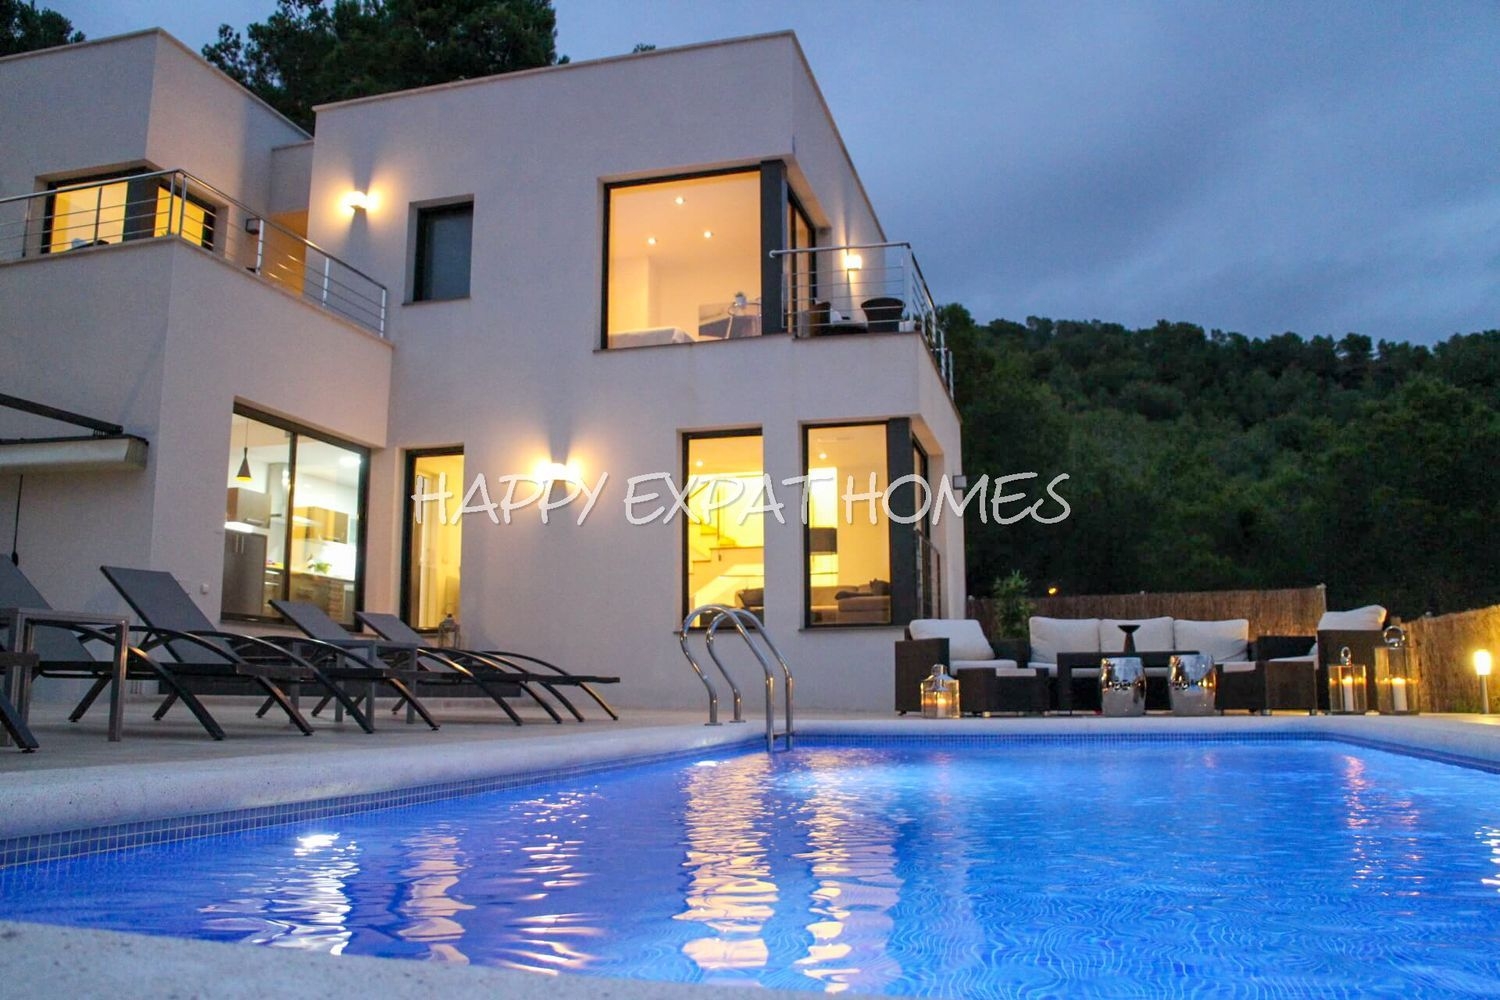 Modern design villa with the best views